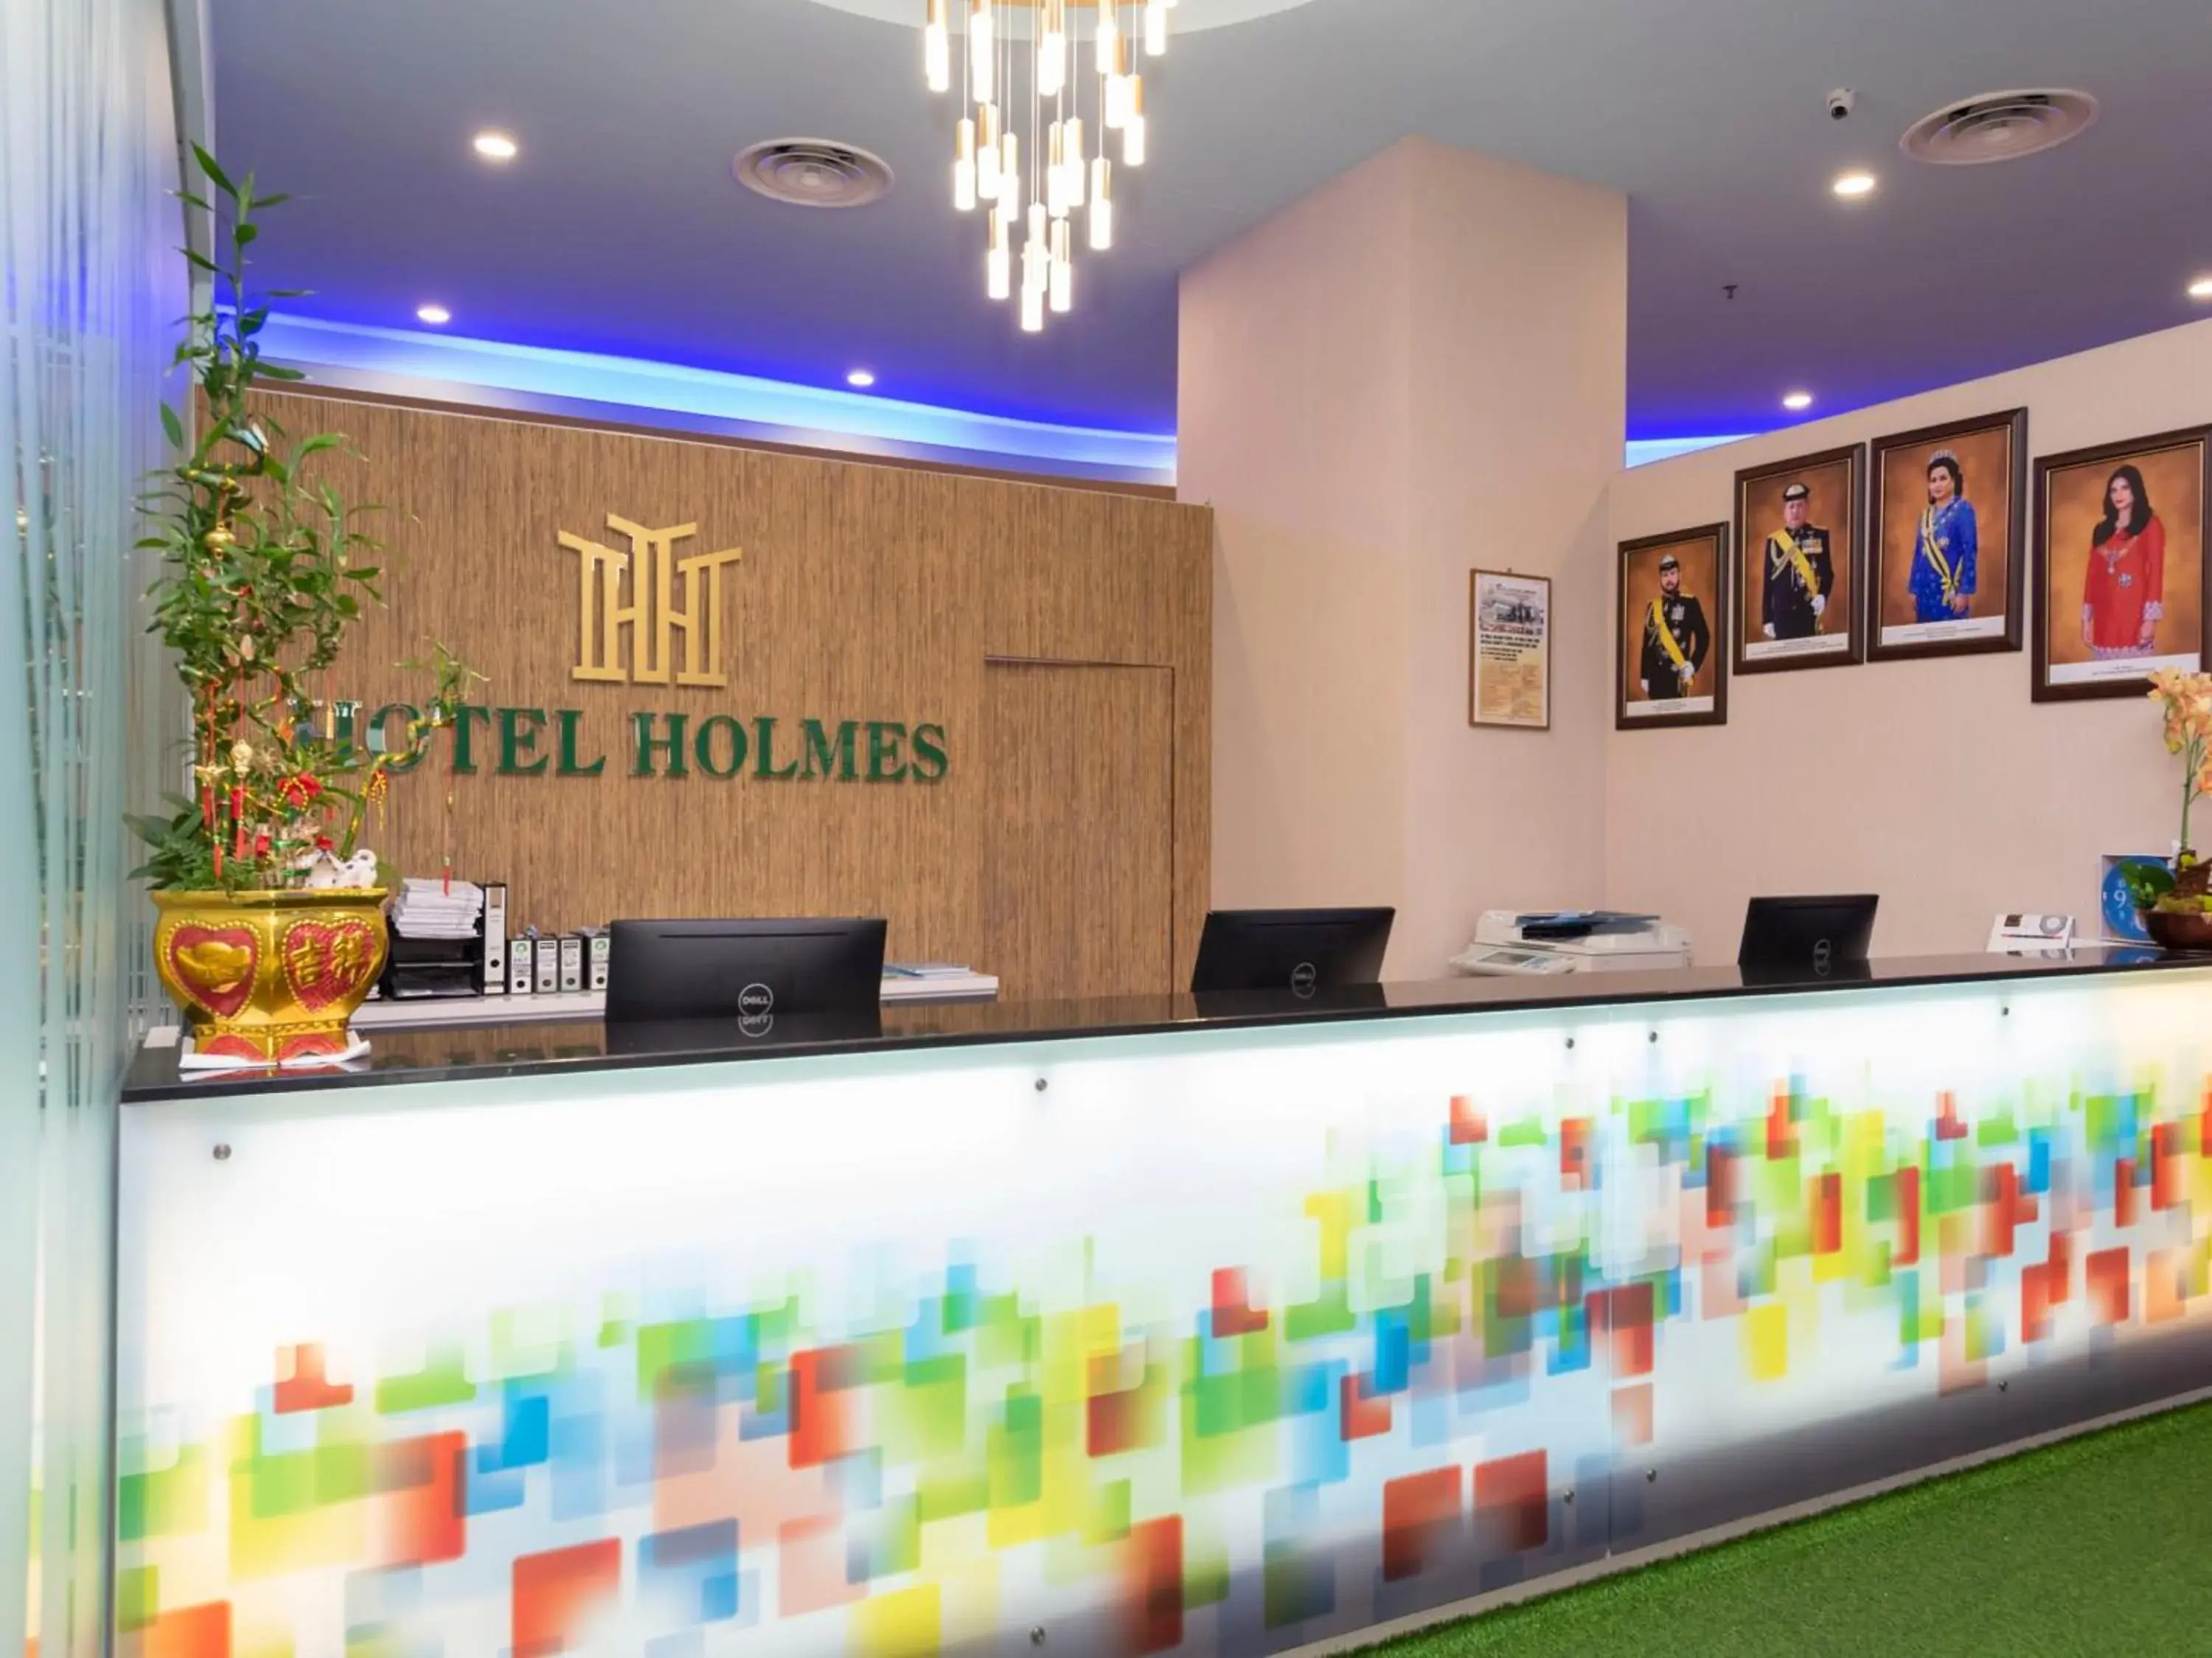 Lobby or reception, Lobby/Reception in Hotel Holmes Gp